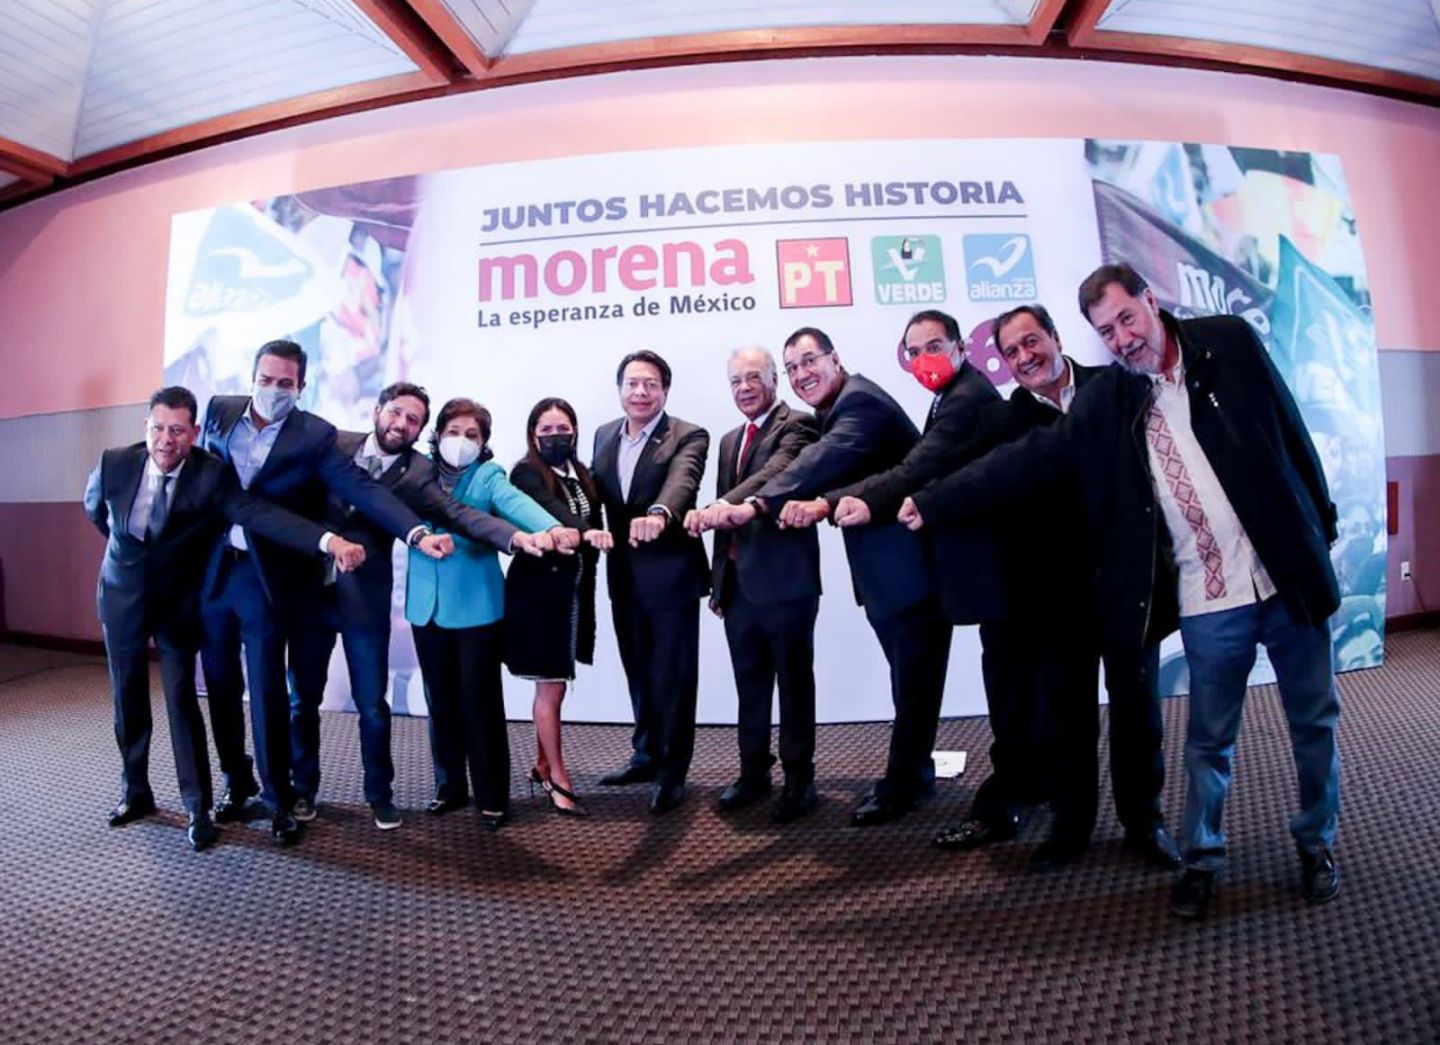 Va Coalición De Morena PT, Verde Ecologista y Nueva Alianza "Juntos Haremos Historia" por 6 Gubernaturas en el 2022.